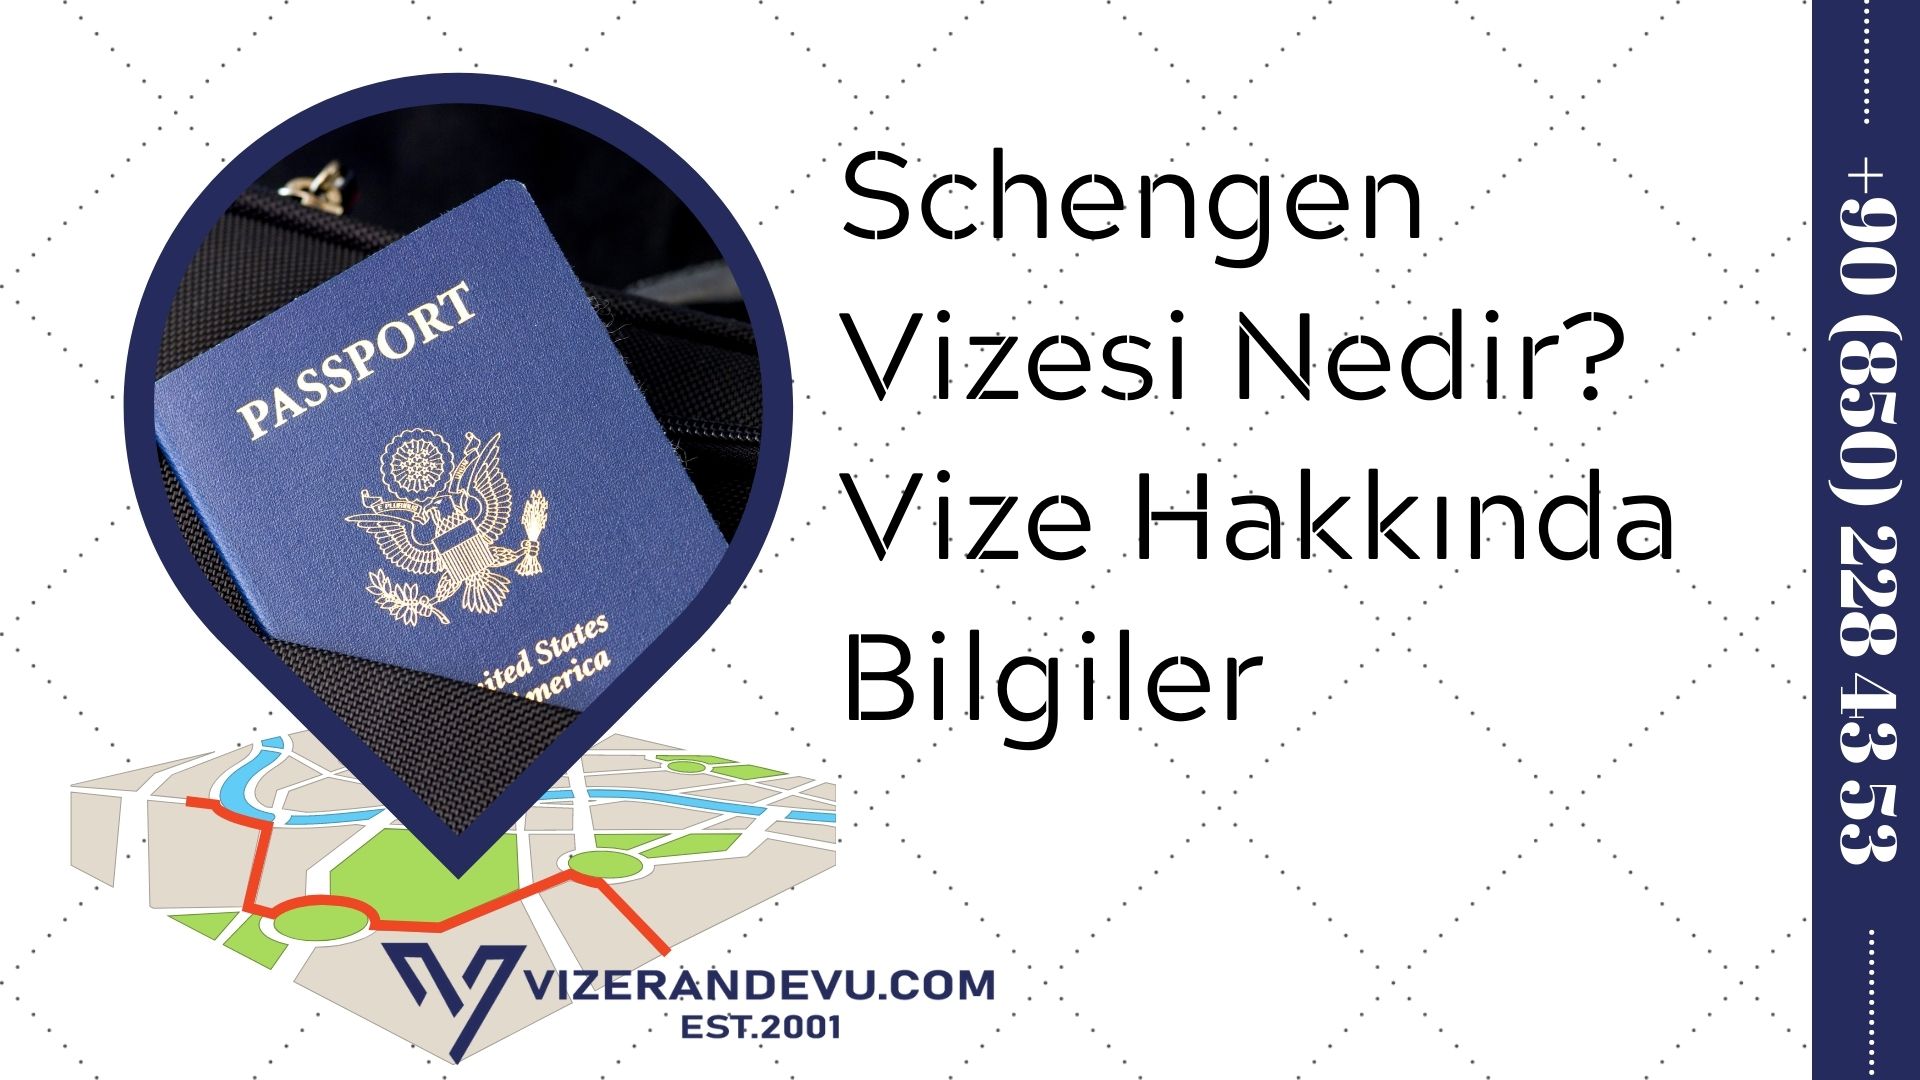 Schengen Vizesi Nedir? Vize Hakkında Bilgiler